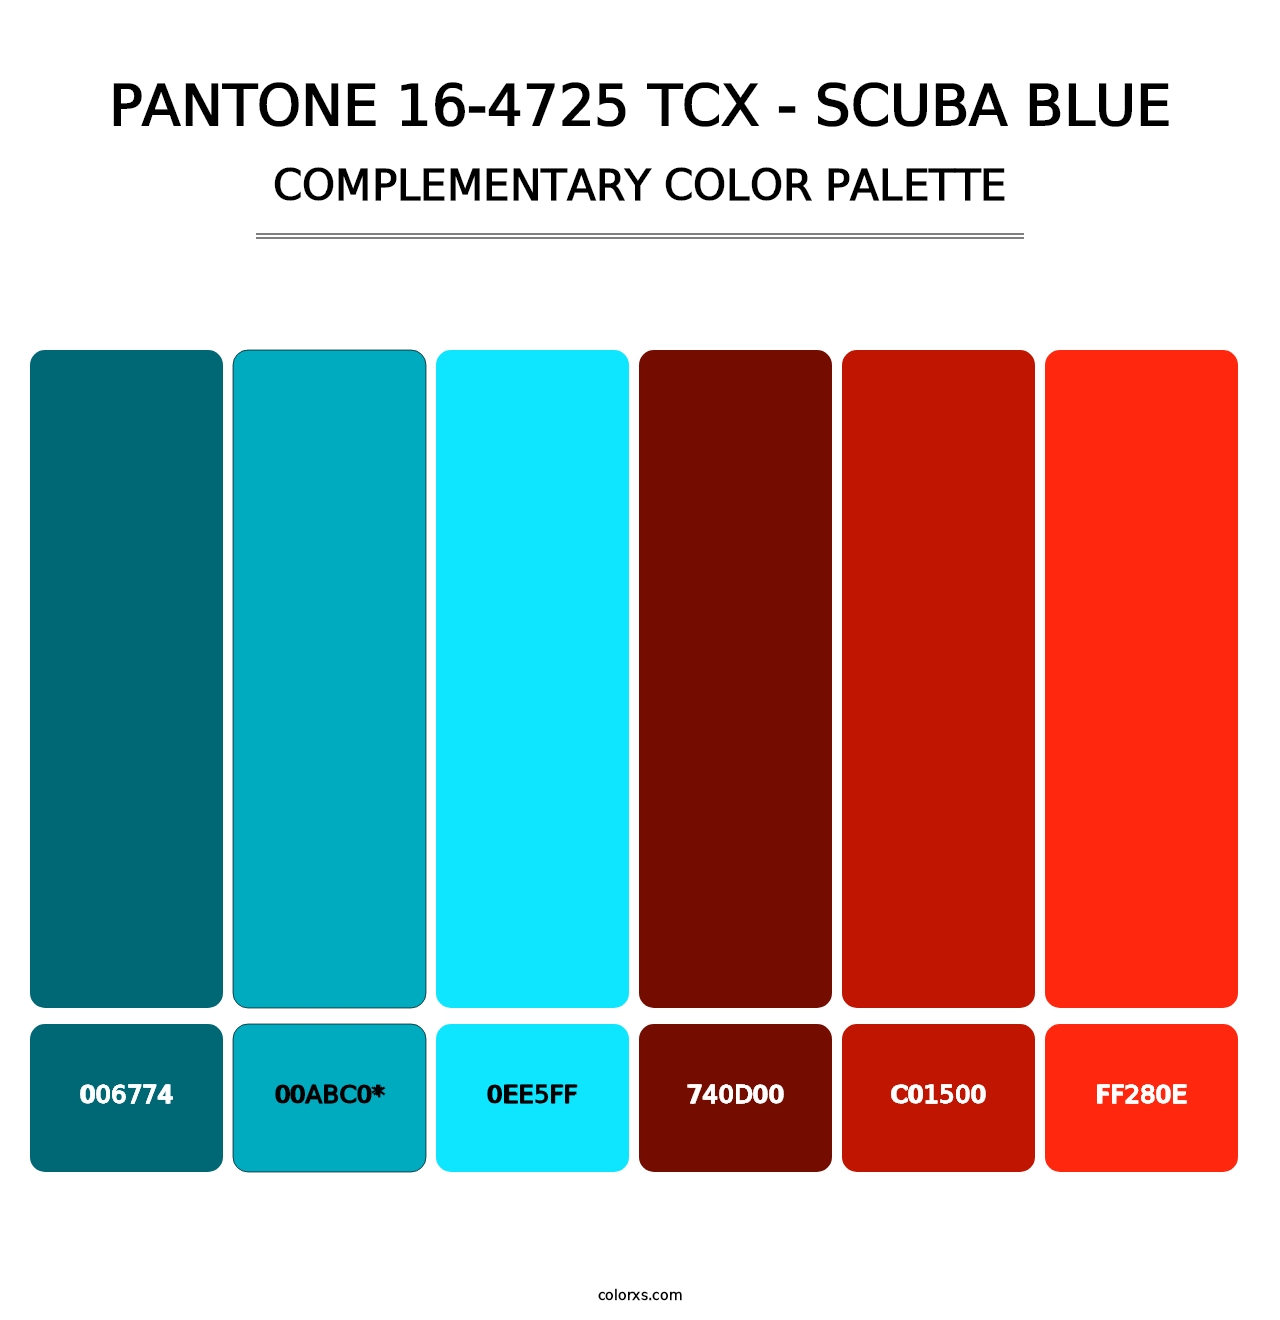 PANTONE 16-4725 TCX - Scuba Blue - Complementary Color Palette